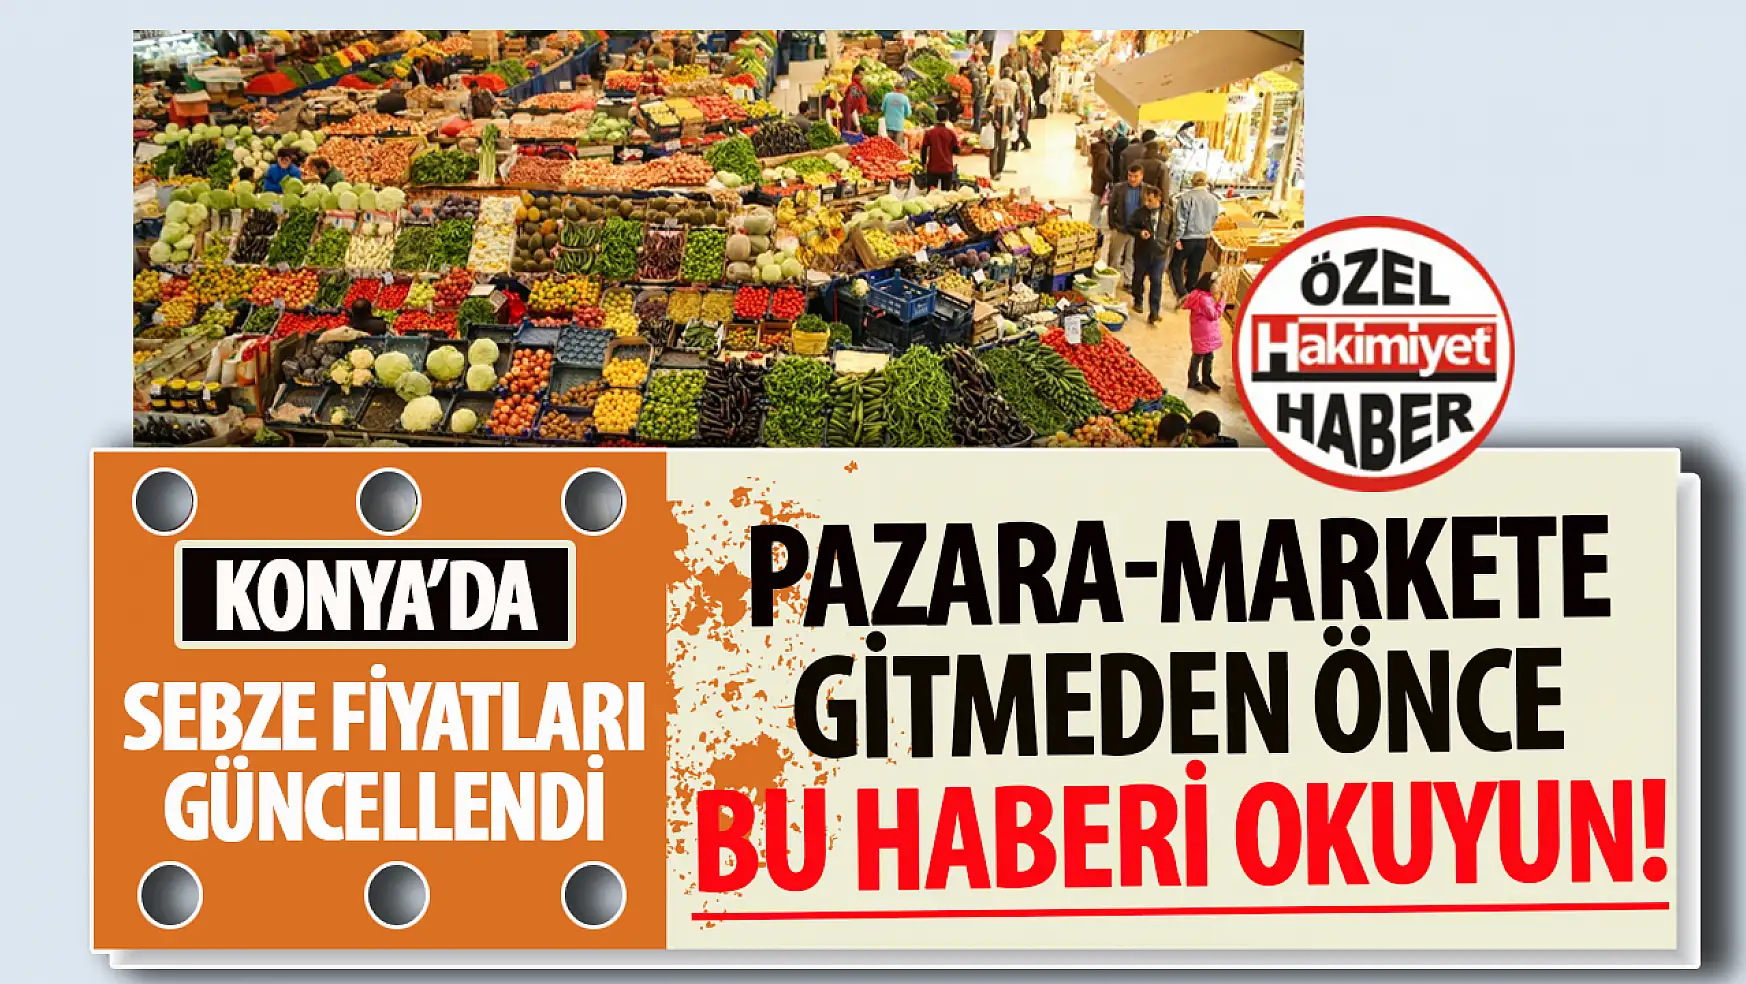 Konya'da Taze Sebzelerin Kilogram Fiyatları Değişti